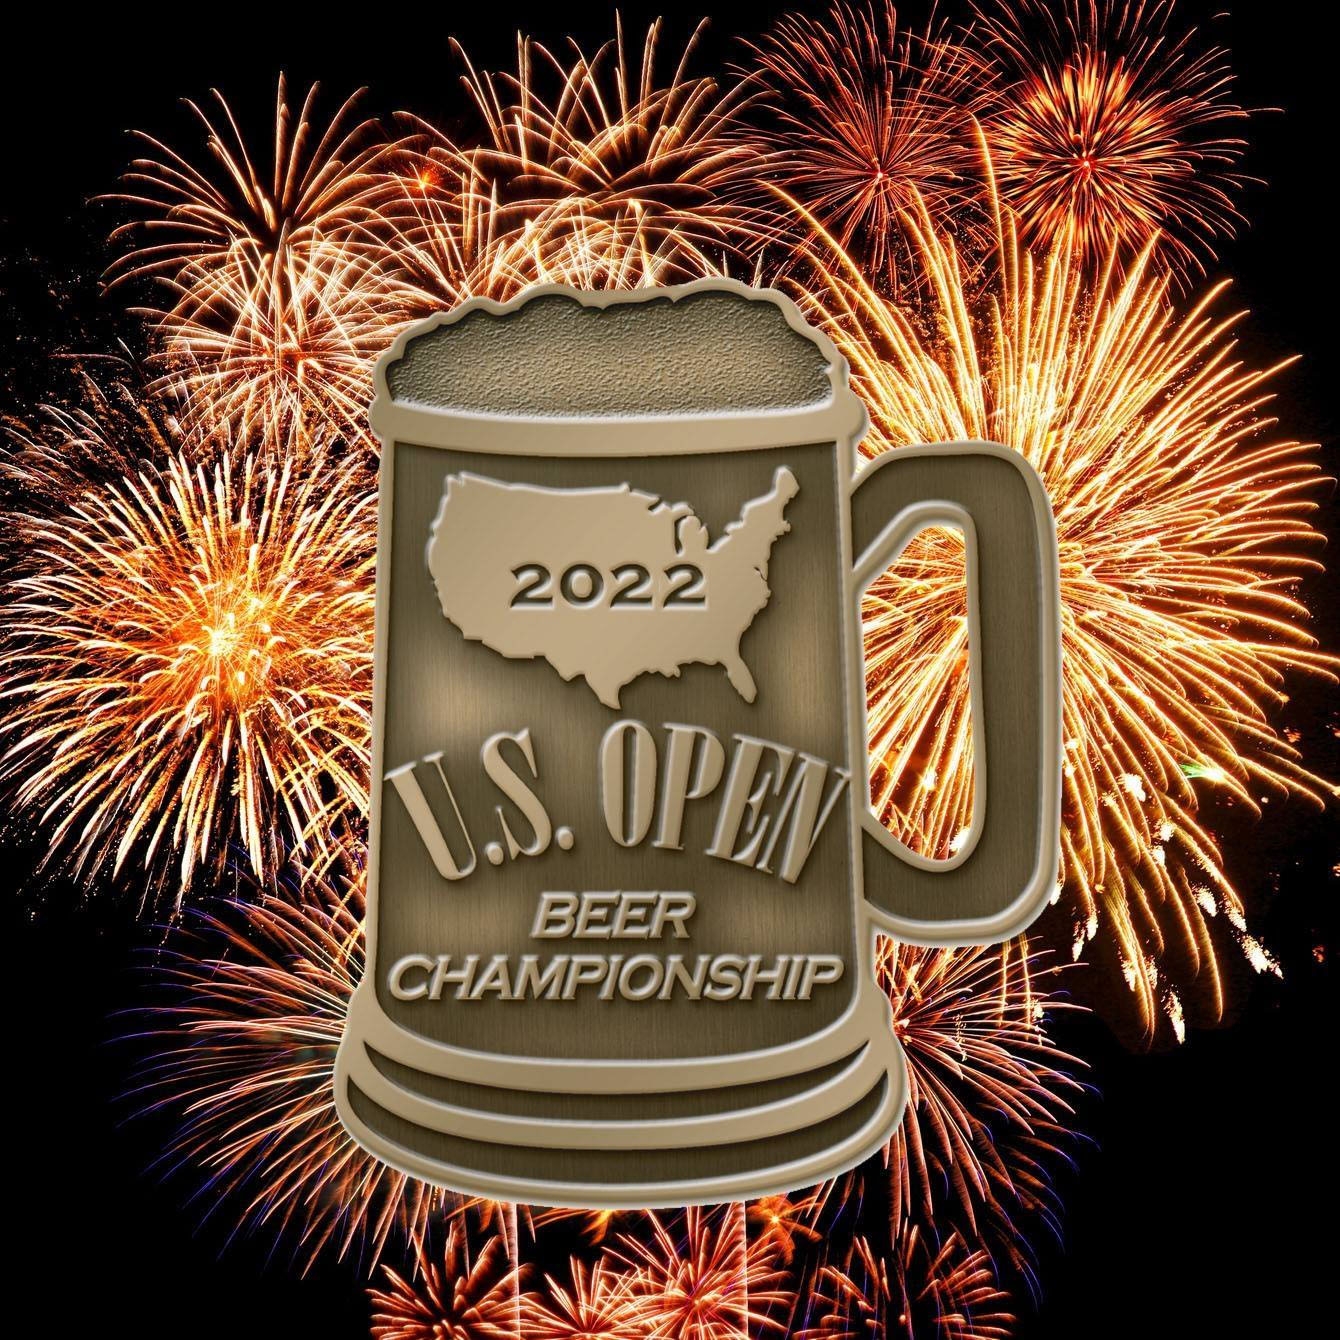 2022 U.S. Open Beer Championship Medal Winners - U.S. Open Beer